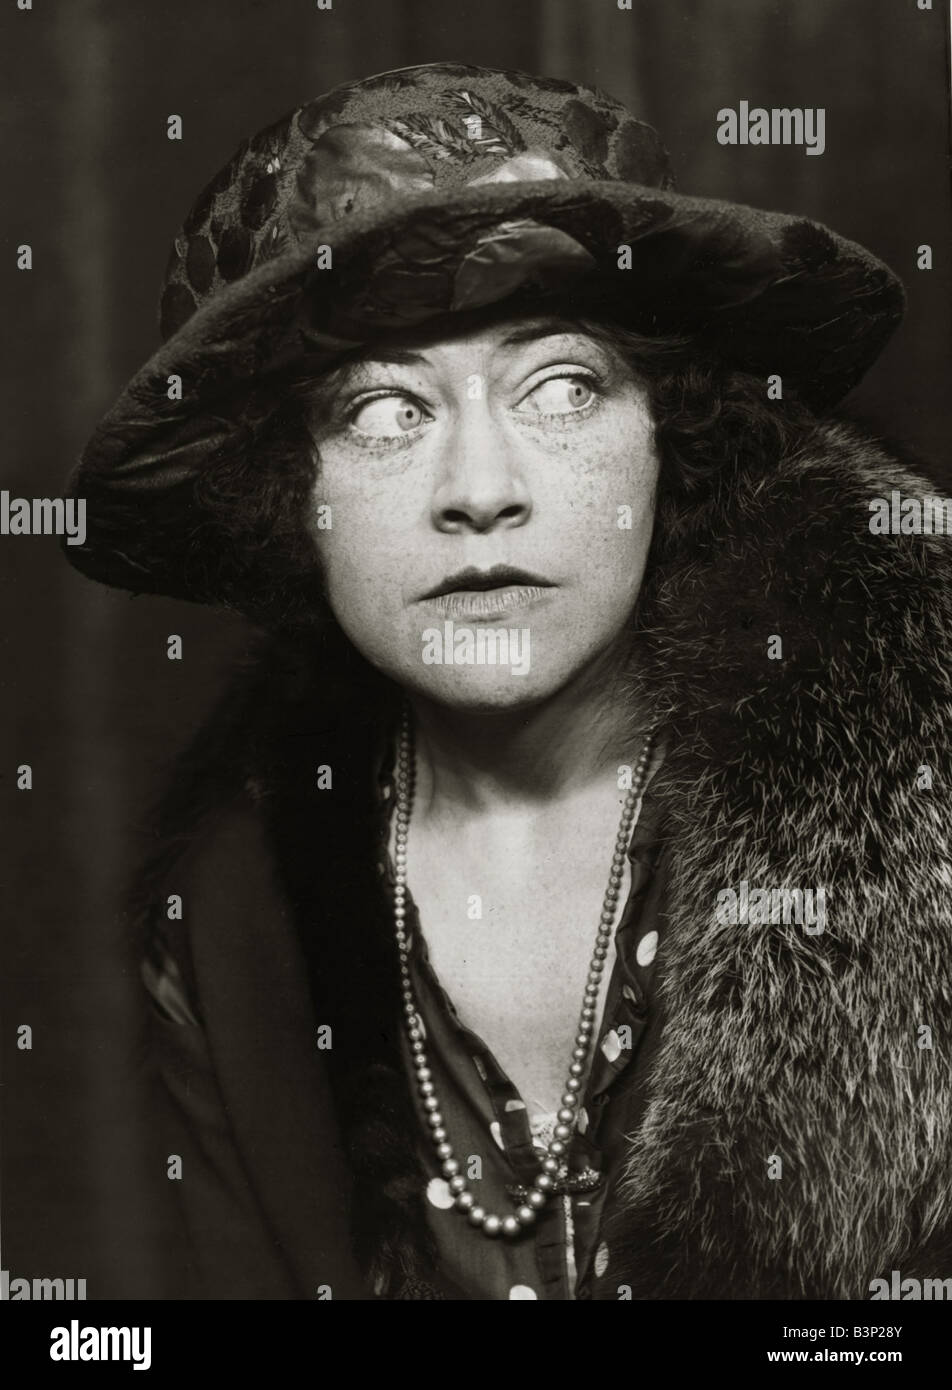 Femme portant des vêtements de style années 1920, coat grand chapeau et collier vêtements mode femmes womens lady 1920 Rabat miroir de style Banque D'Images